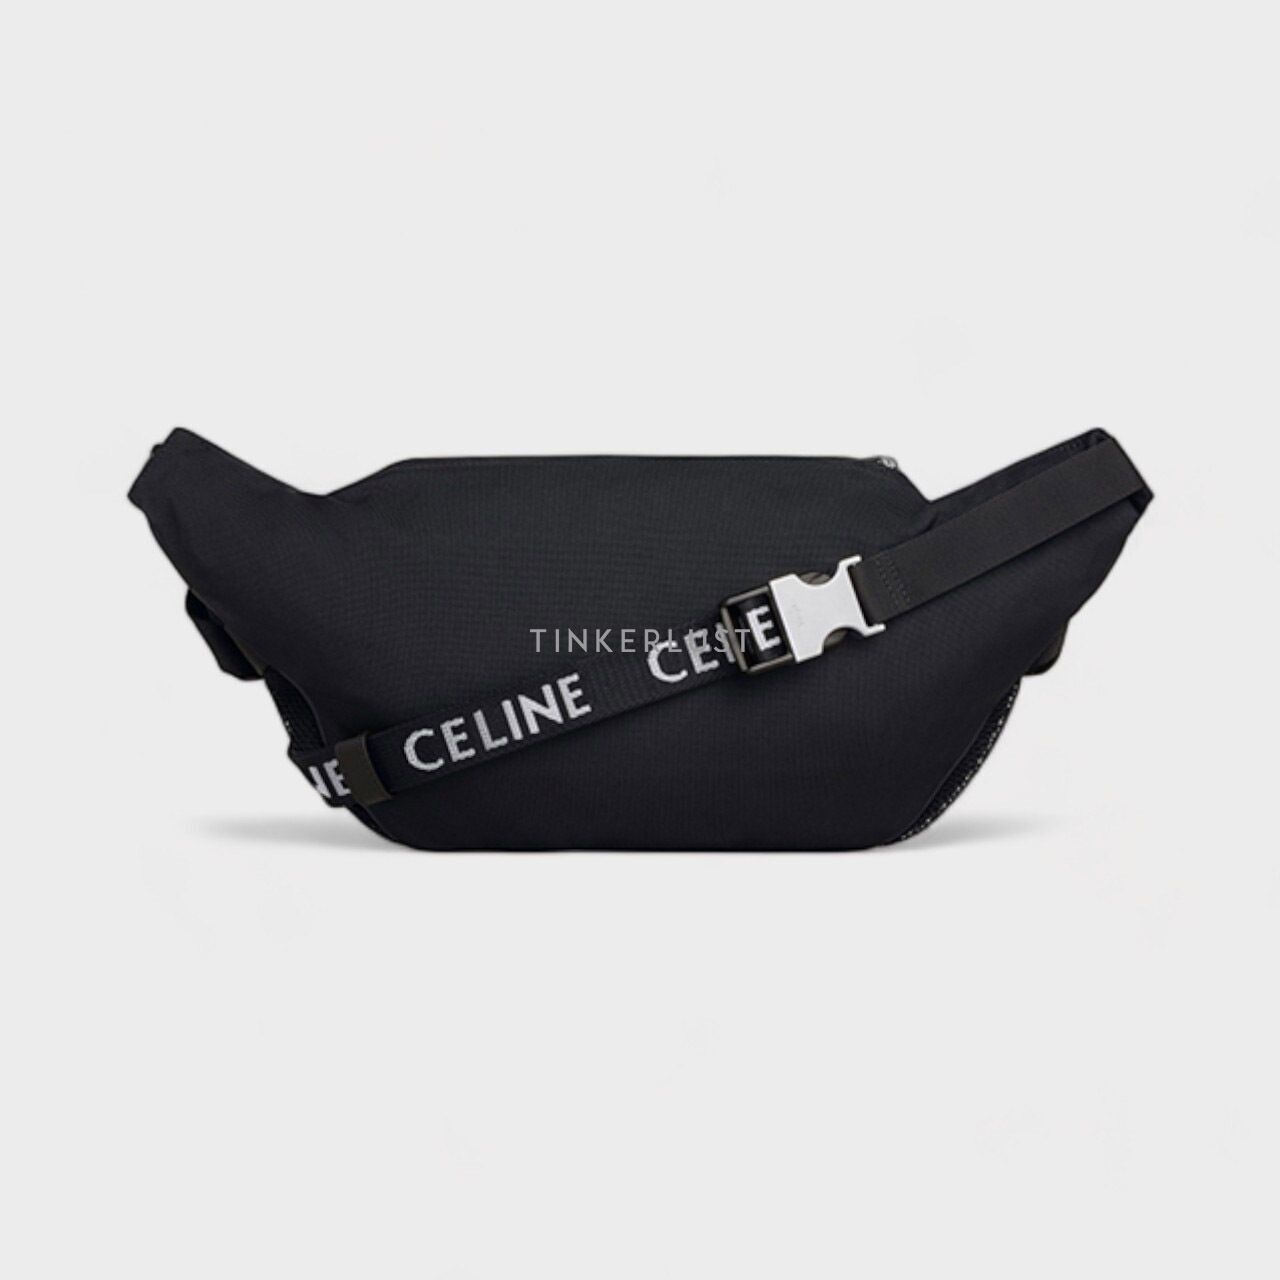 Celine Large Zipped Trekking Belt Bag in Black Nylon with Celine Print Sling Bag